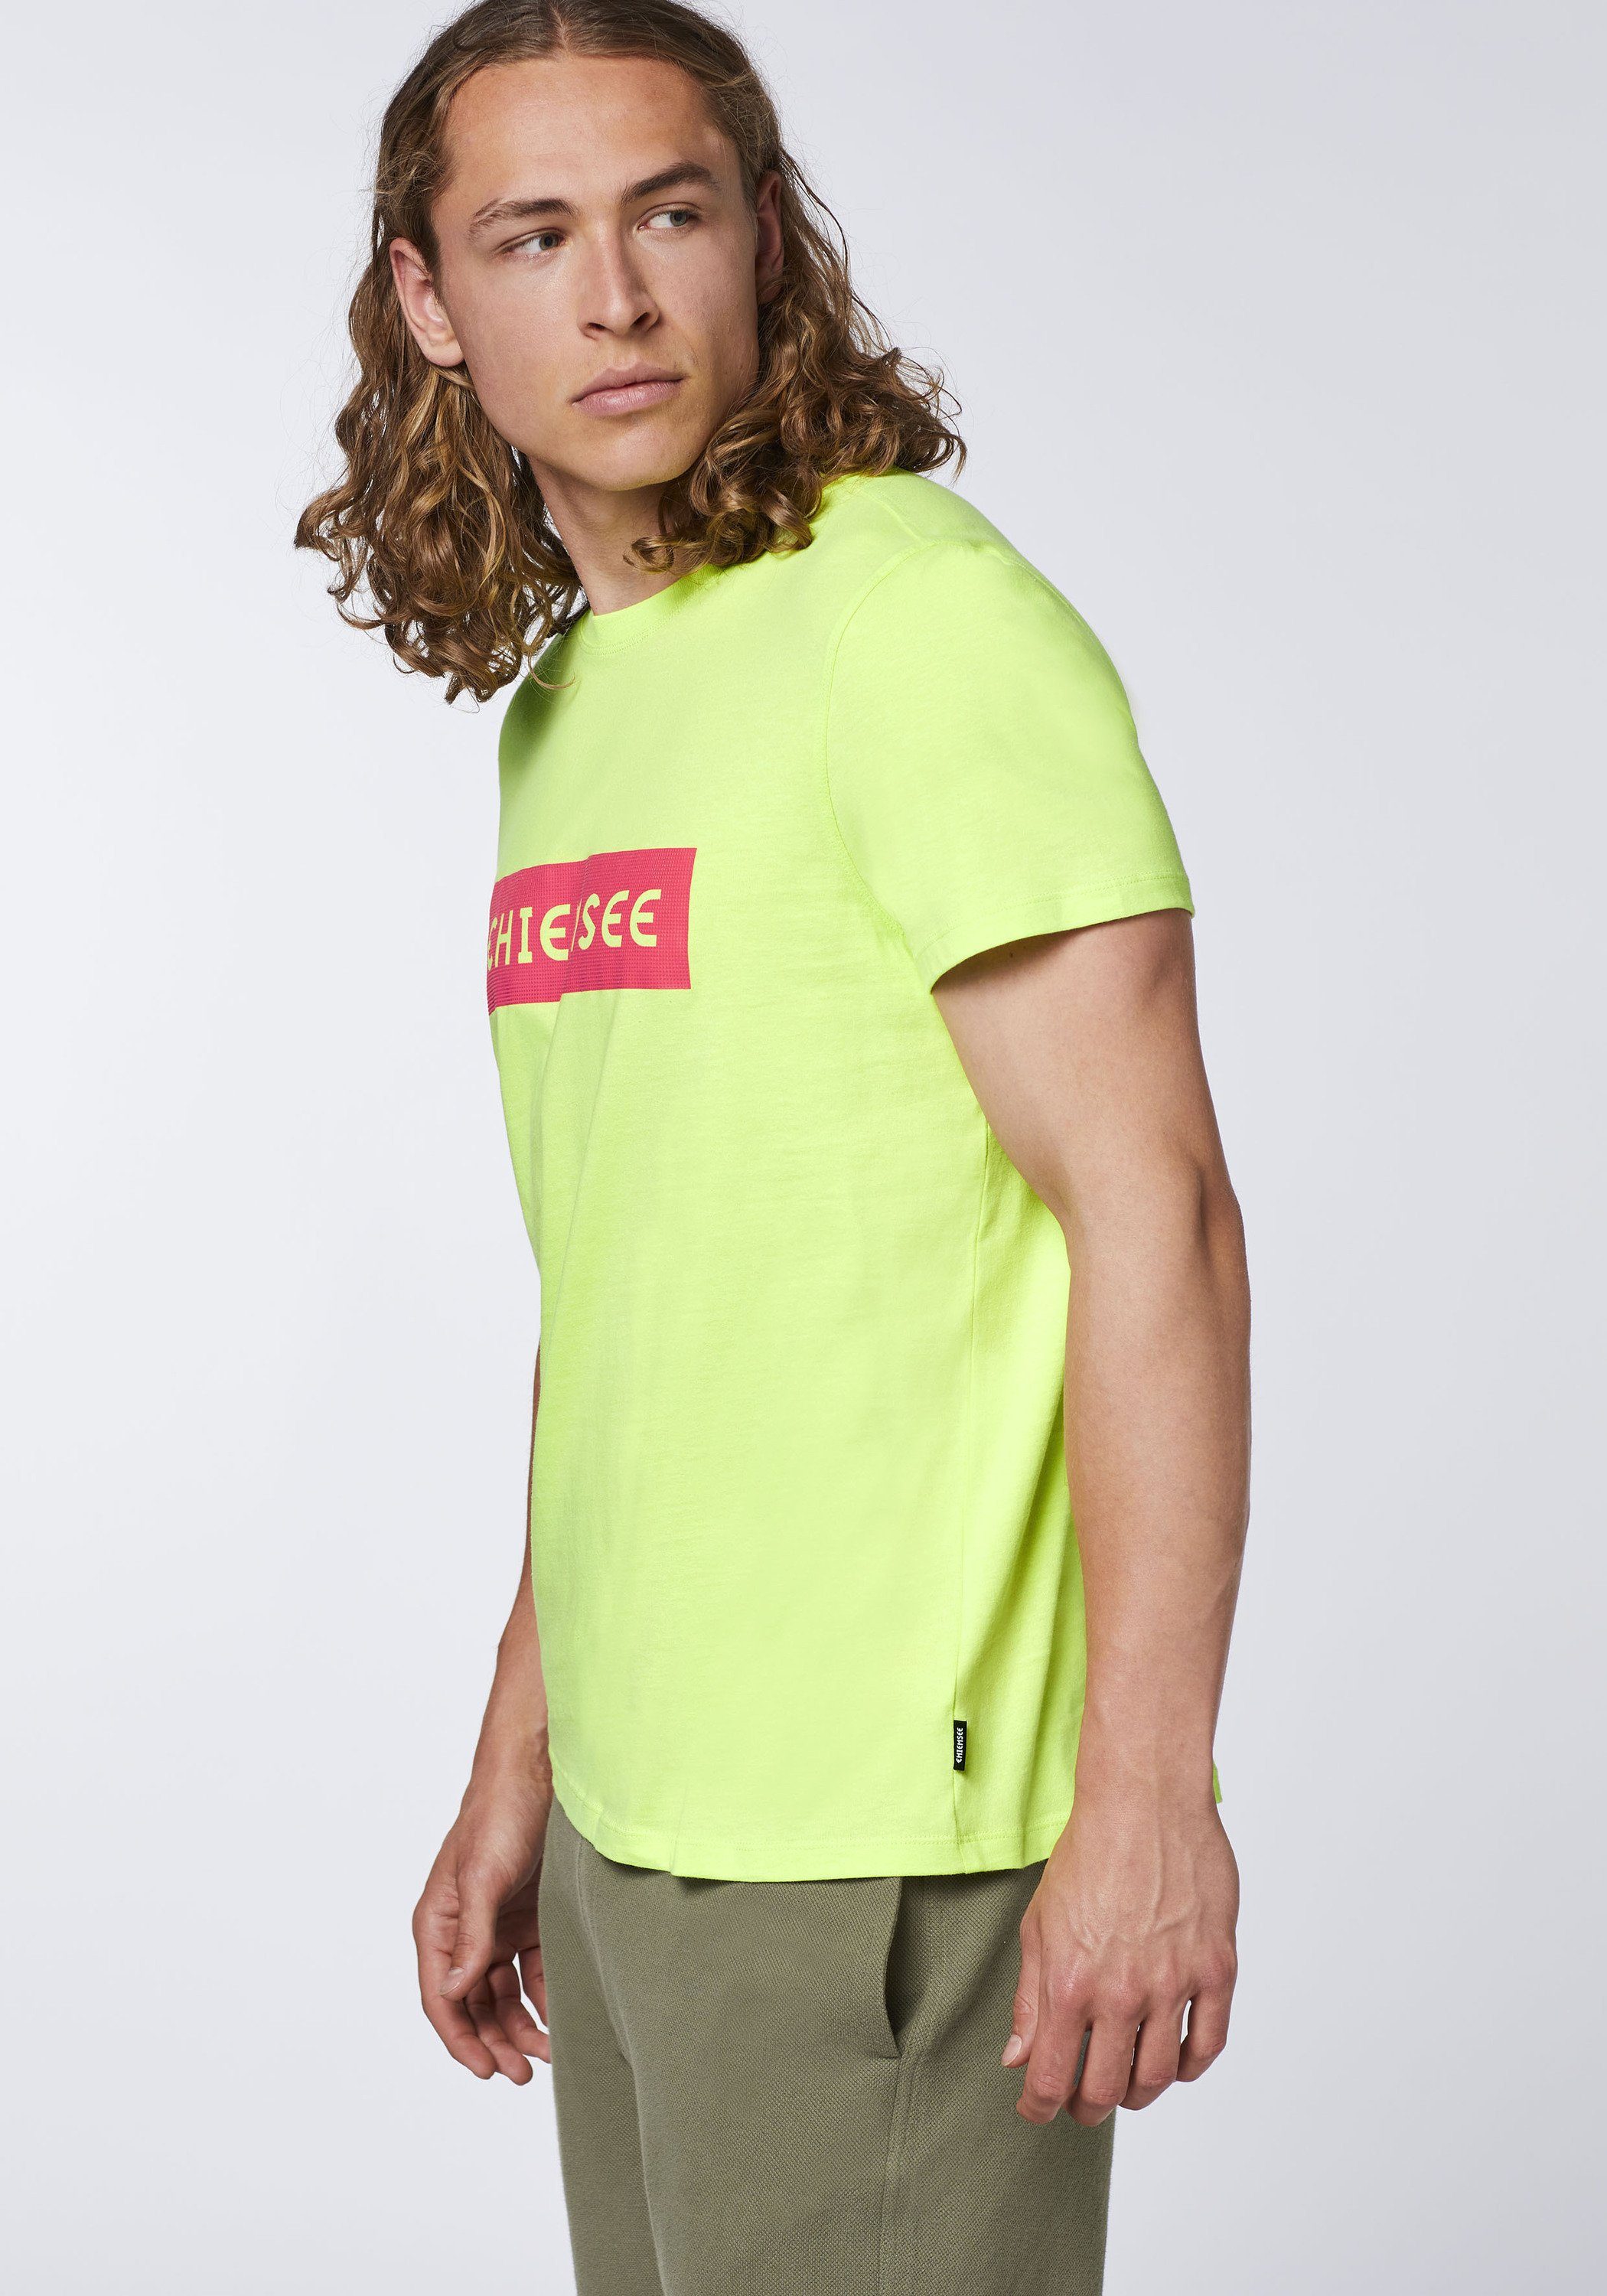 Chiemsee plakativem Sharp mit Print-Shirt Markenschriftzug 13-0535 T-Shirt Green 1